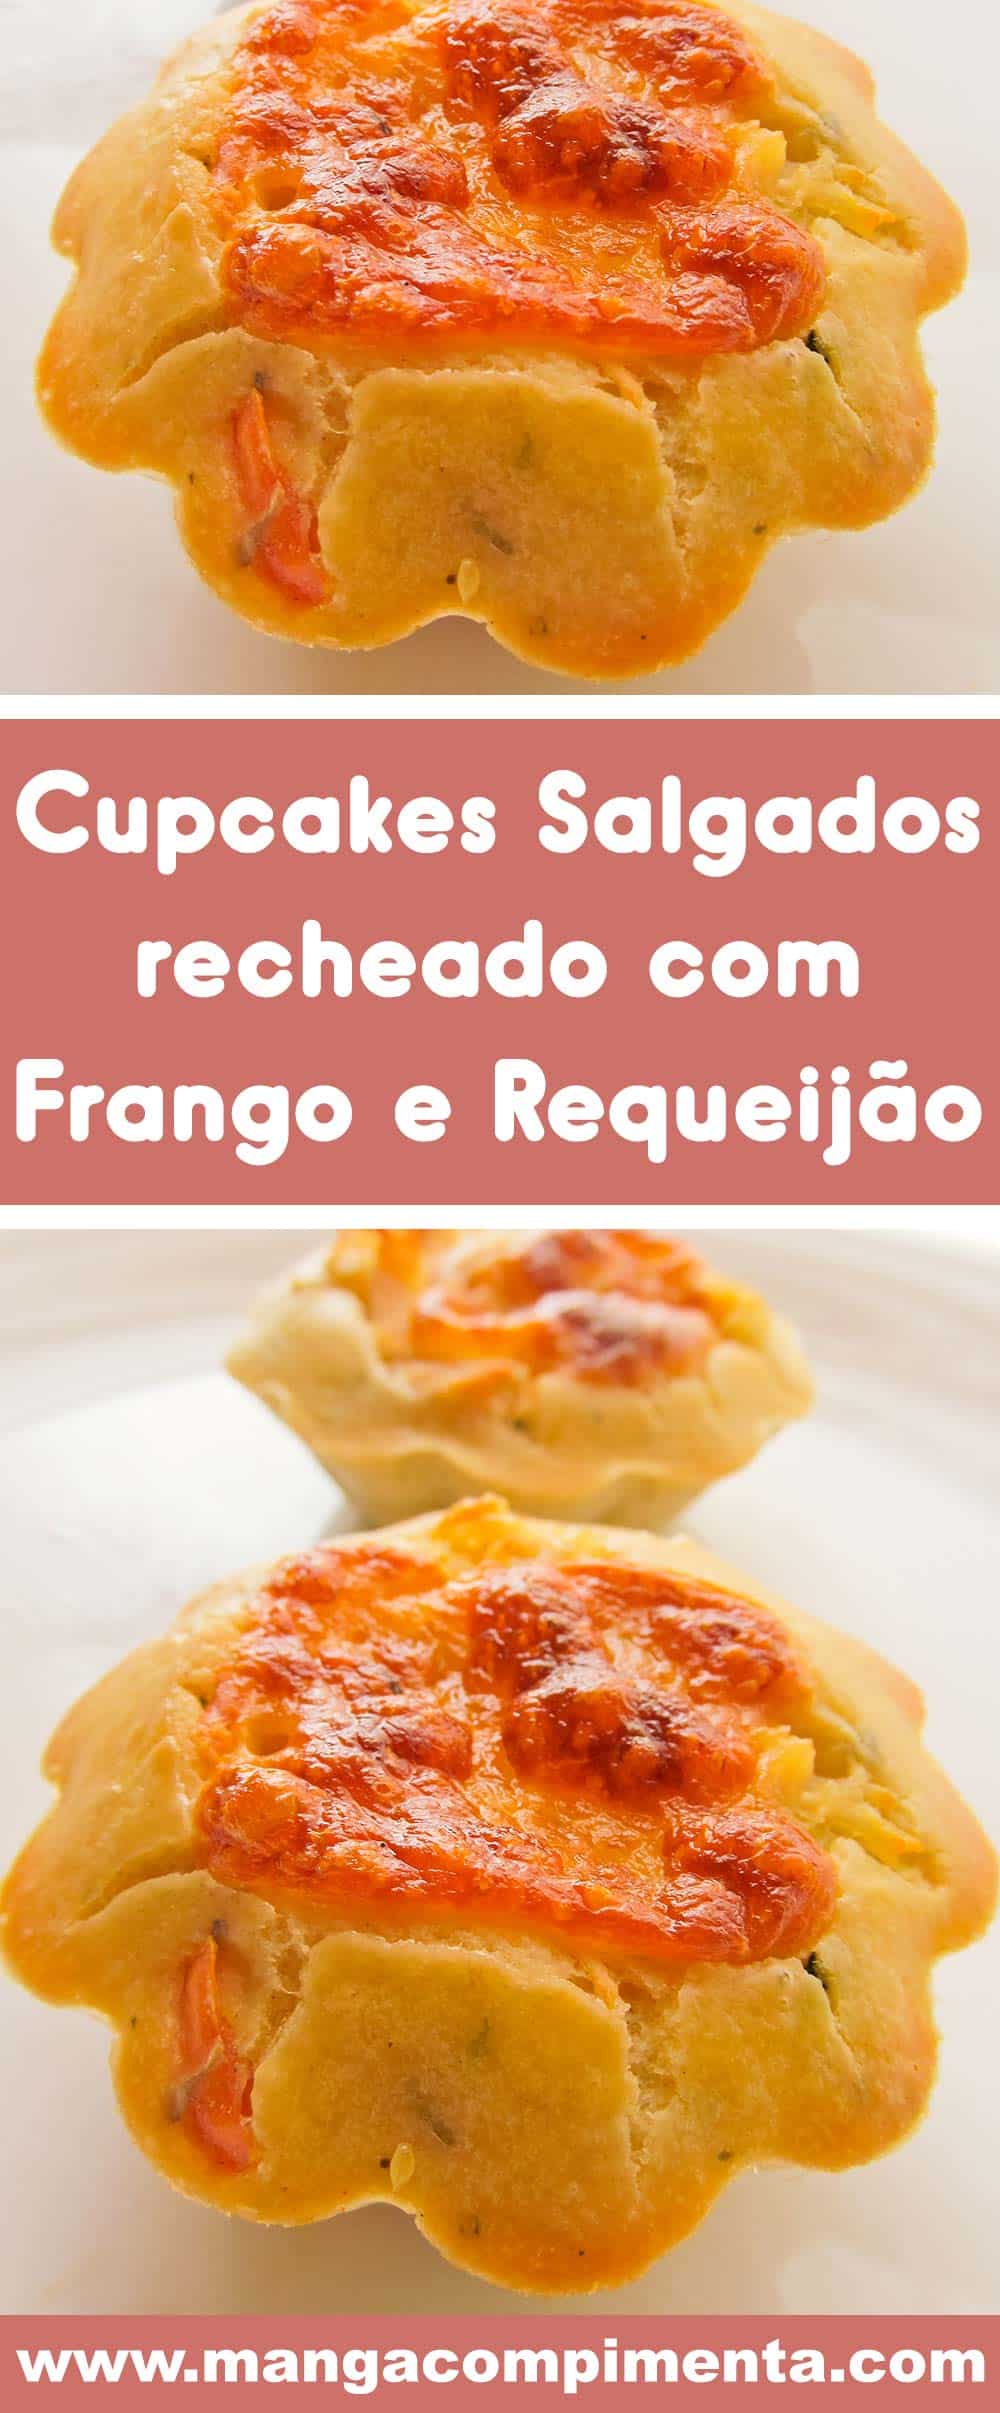 Cupcakes Salgados Recheado com Frango e Requeijão - um lanche delicioso para o final da tarde!